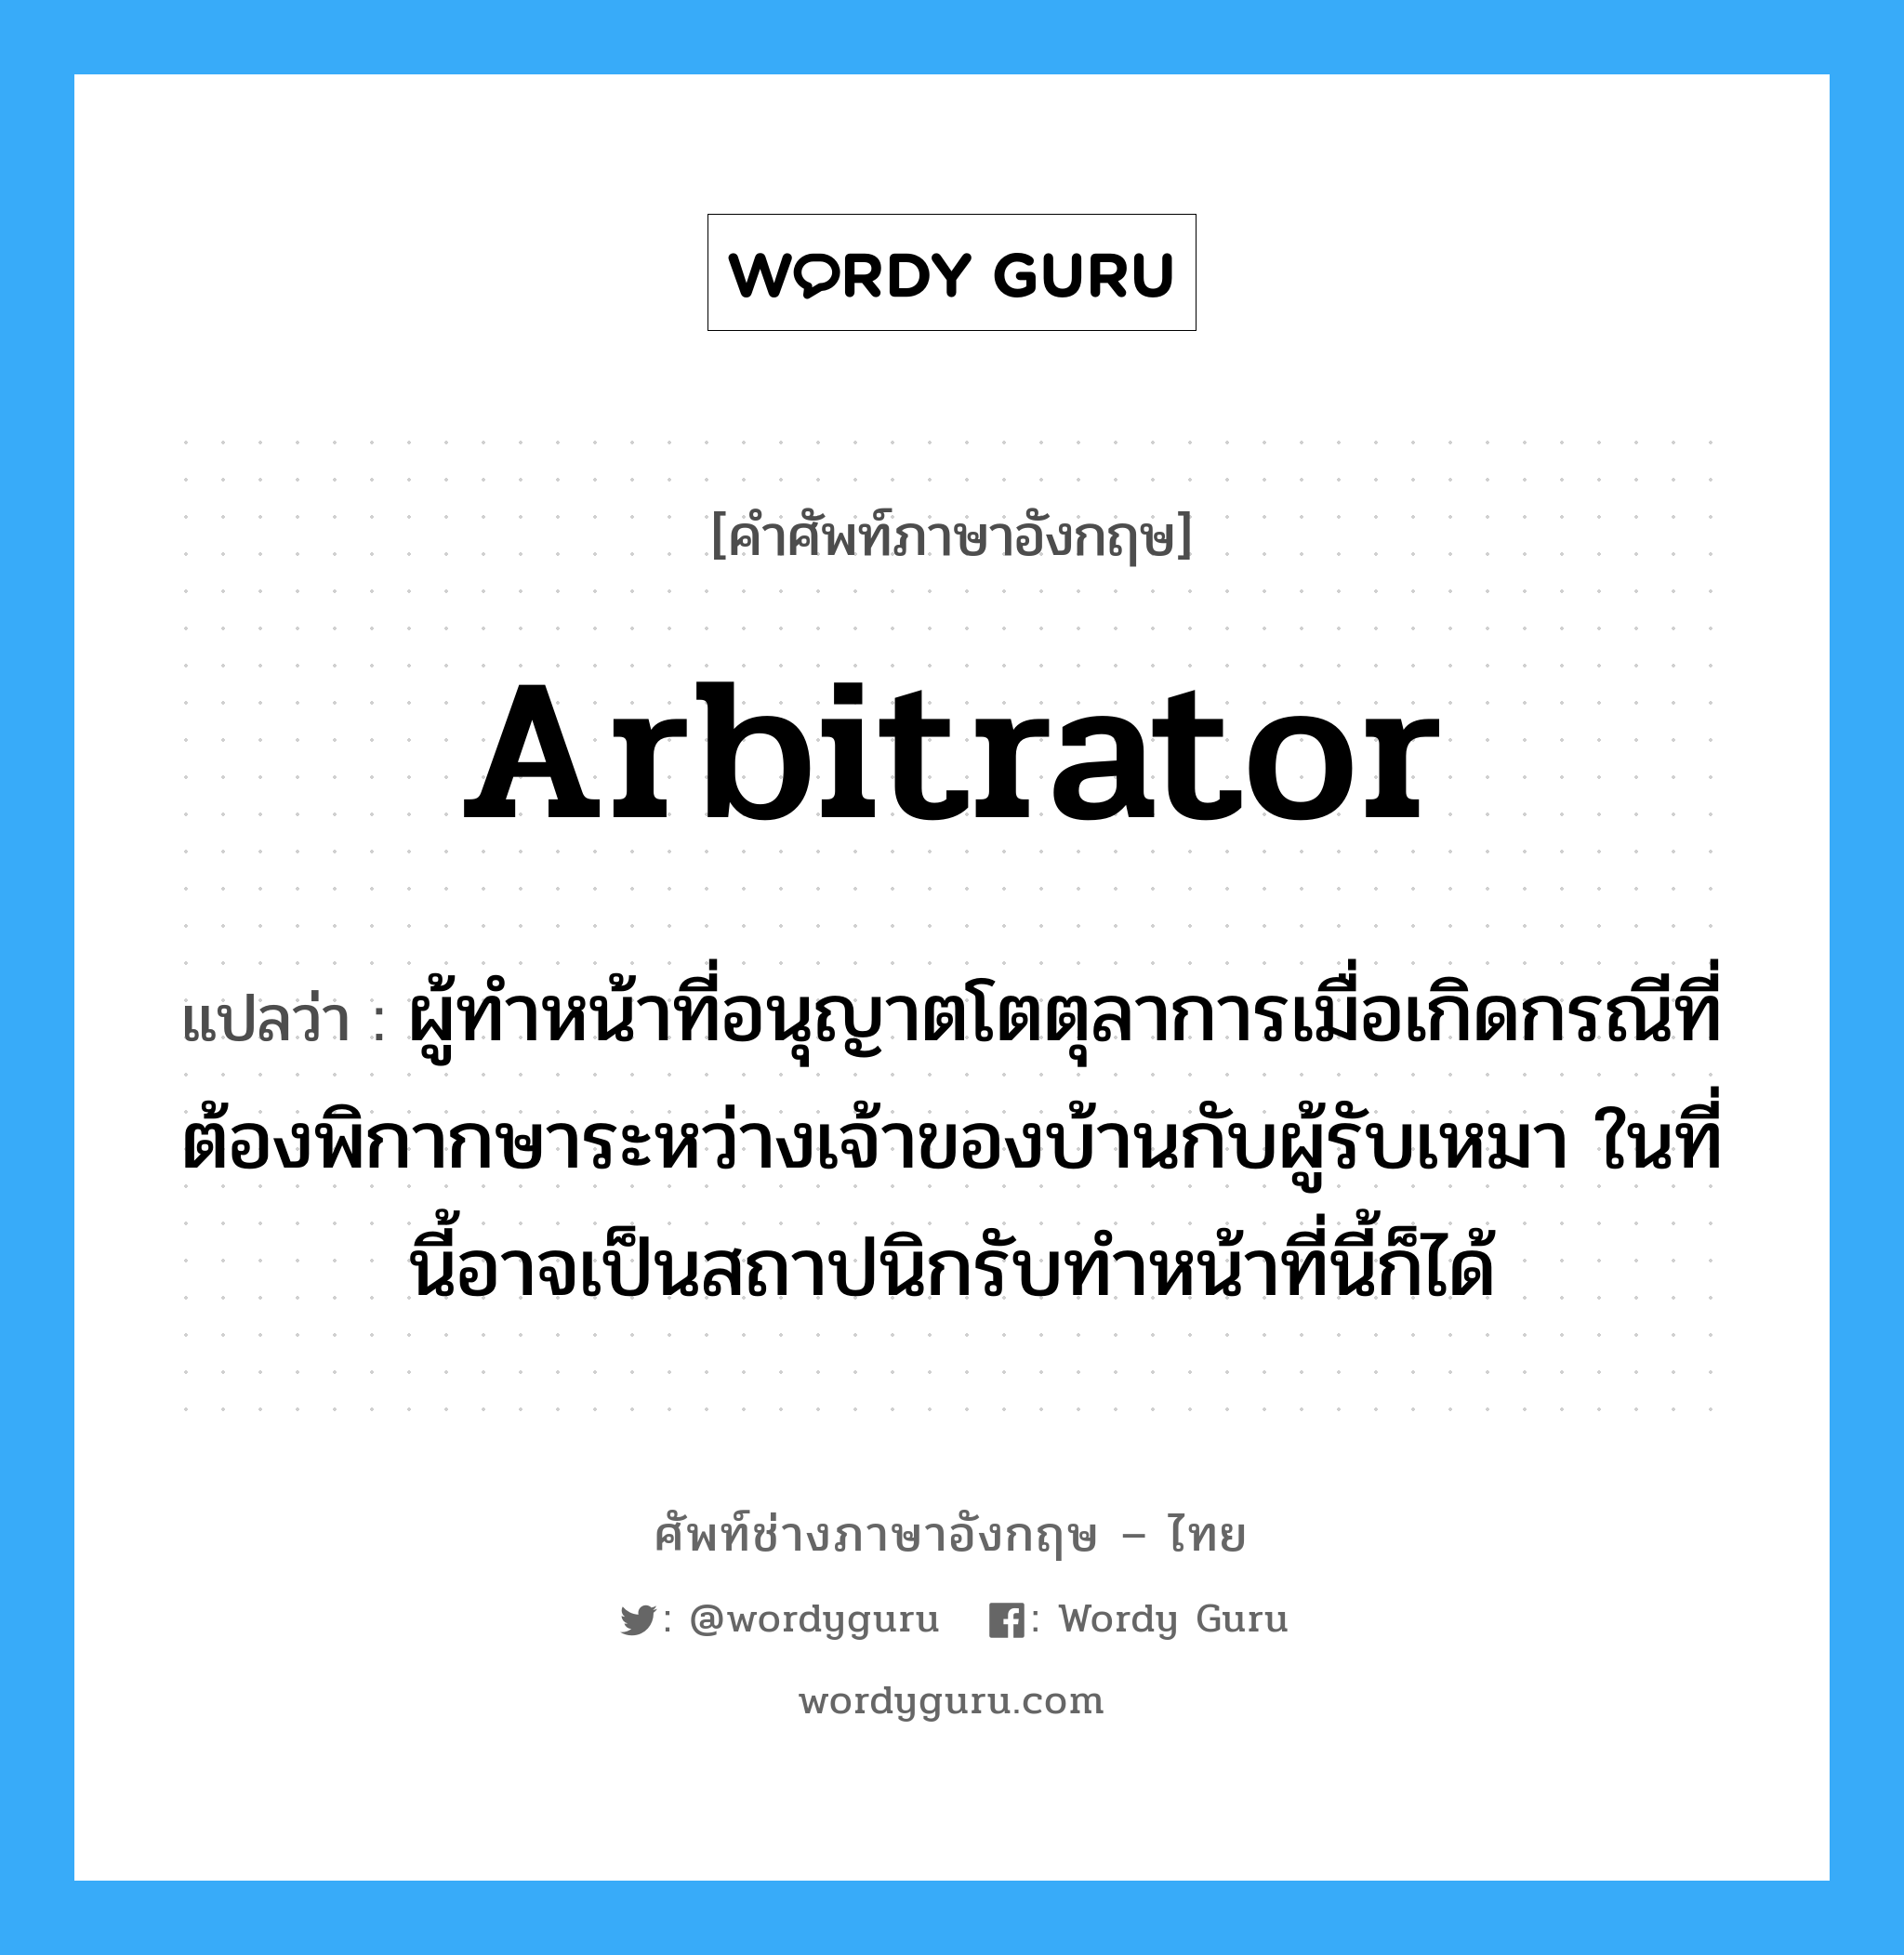 arbitrator แปลว่า?, คำศัพท์ช่างภาษาอังกฤษ - ไทย arbitrator คำศัพท์ภาษาอังกฤษ arbitrator แปลว่า ผู้ทำหน้าที่อนุญาตโตตุลาการเมื่อเกิดกรณีที่ต้องพิกากษาระหว่างเจ้าของบ้านกับผู้รับเหมา ในที่นี้อาจเป็นสถาปนิกรับทำหน้าที่นี้ก็ได้